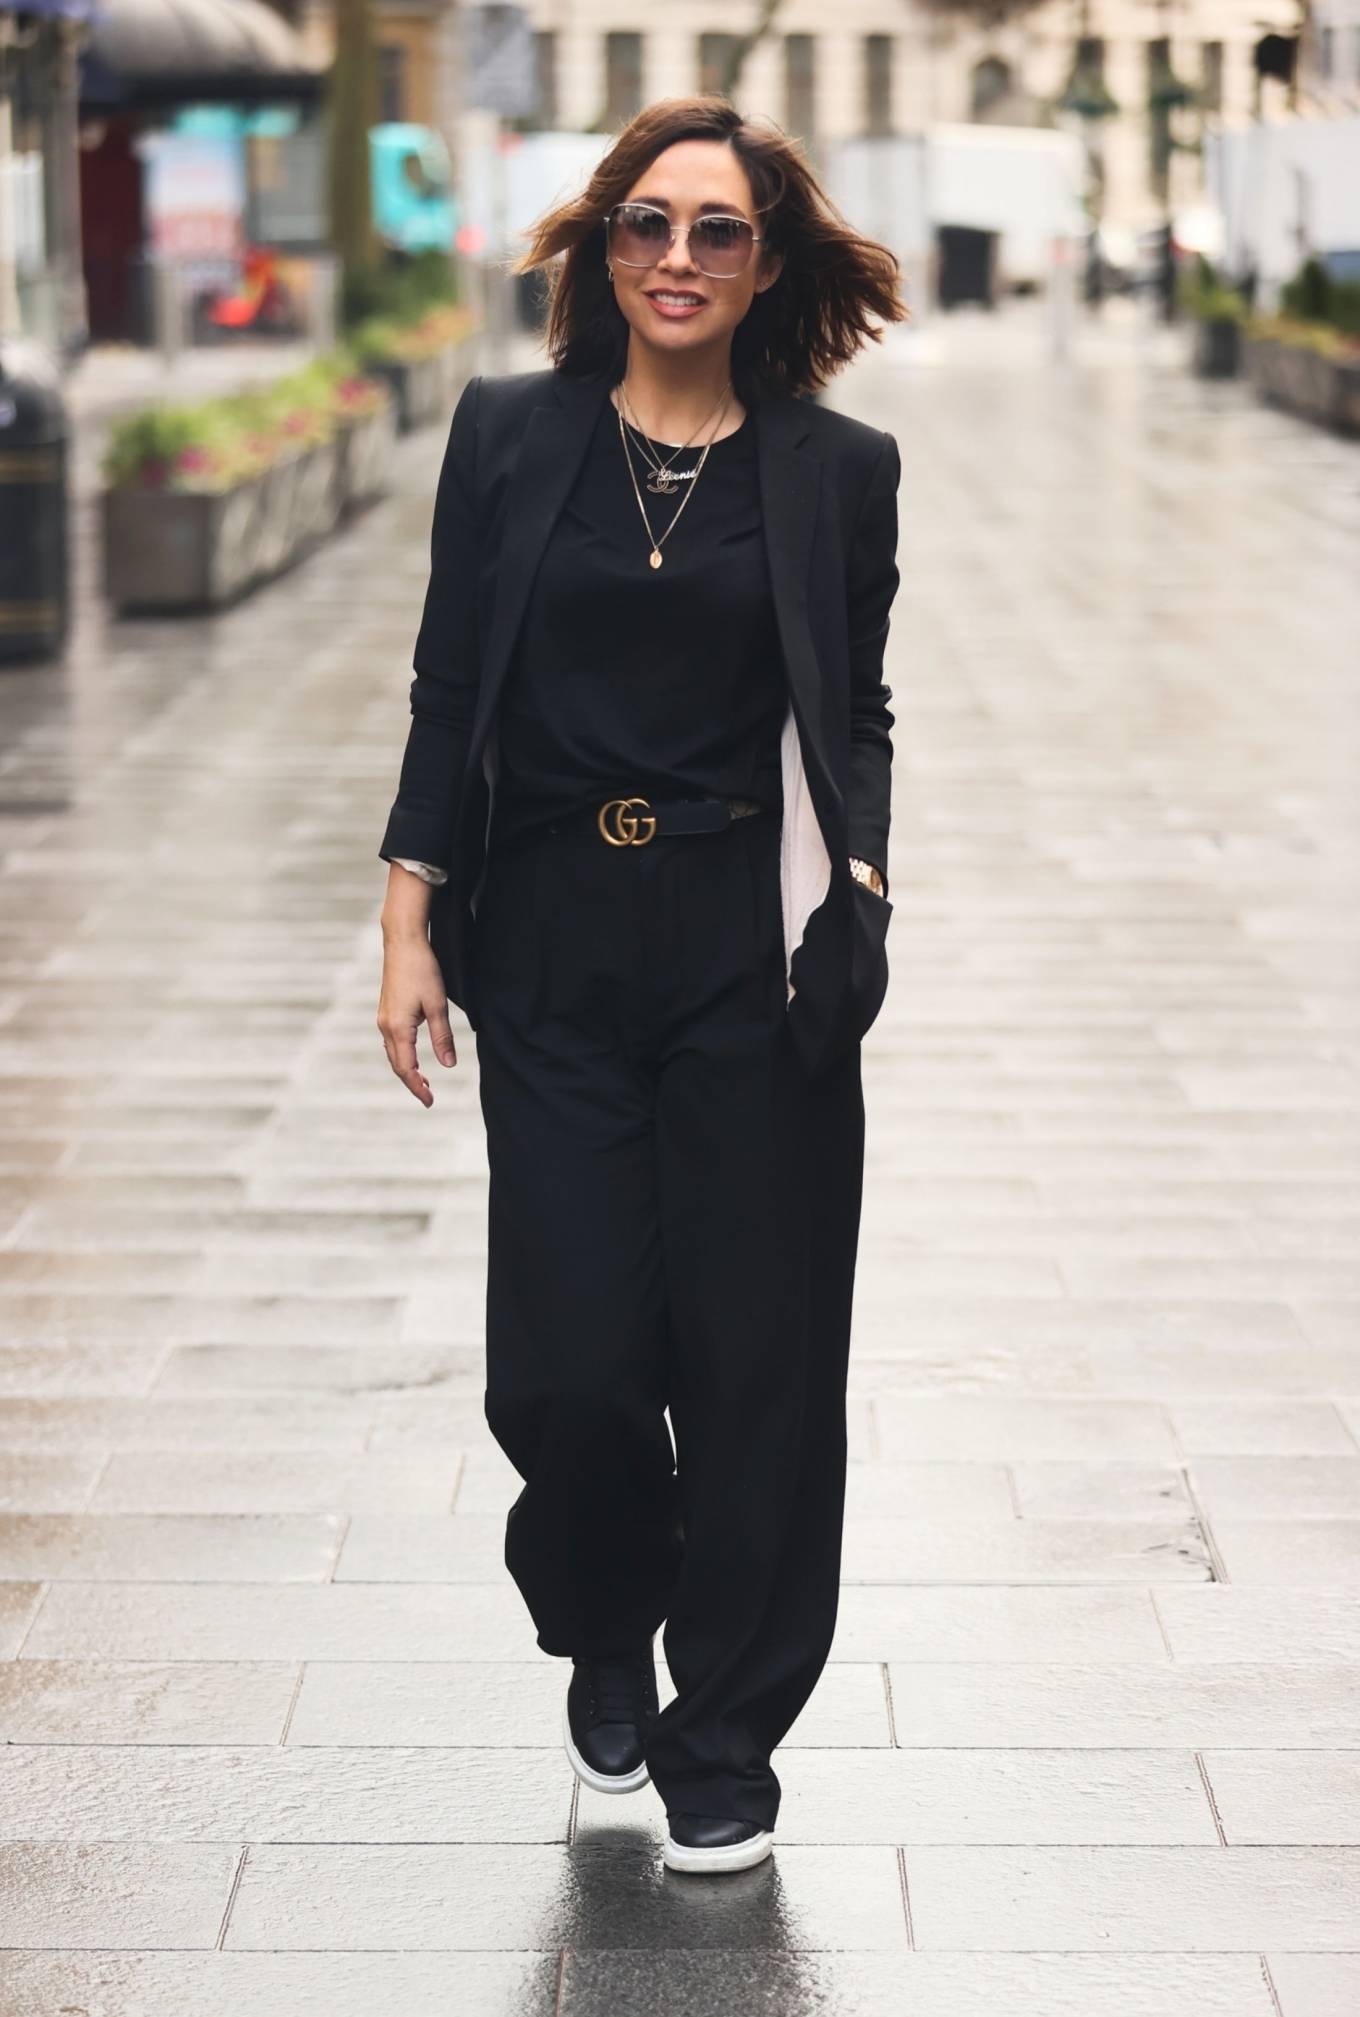 Myleene Klass – Looks chic in trouser suit in London | GotCeleb